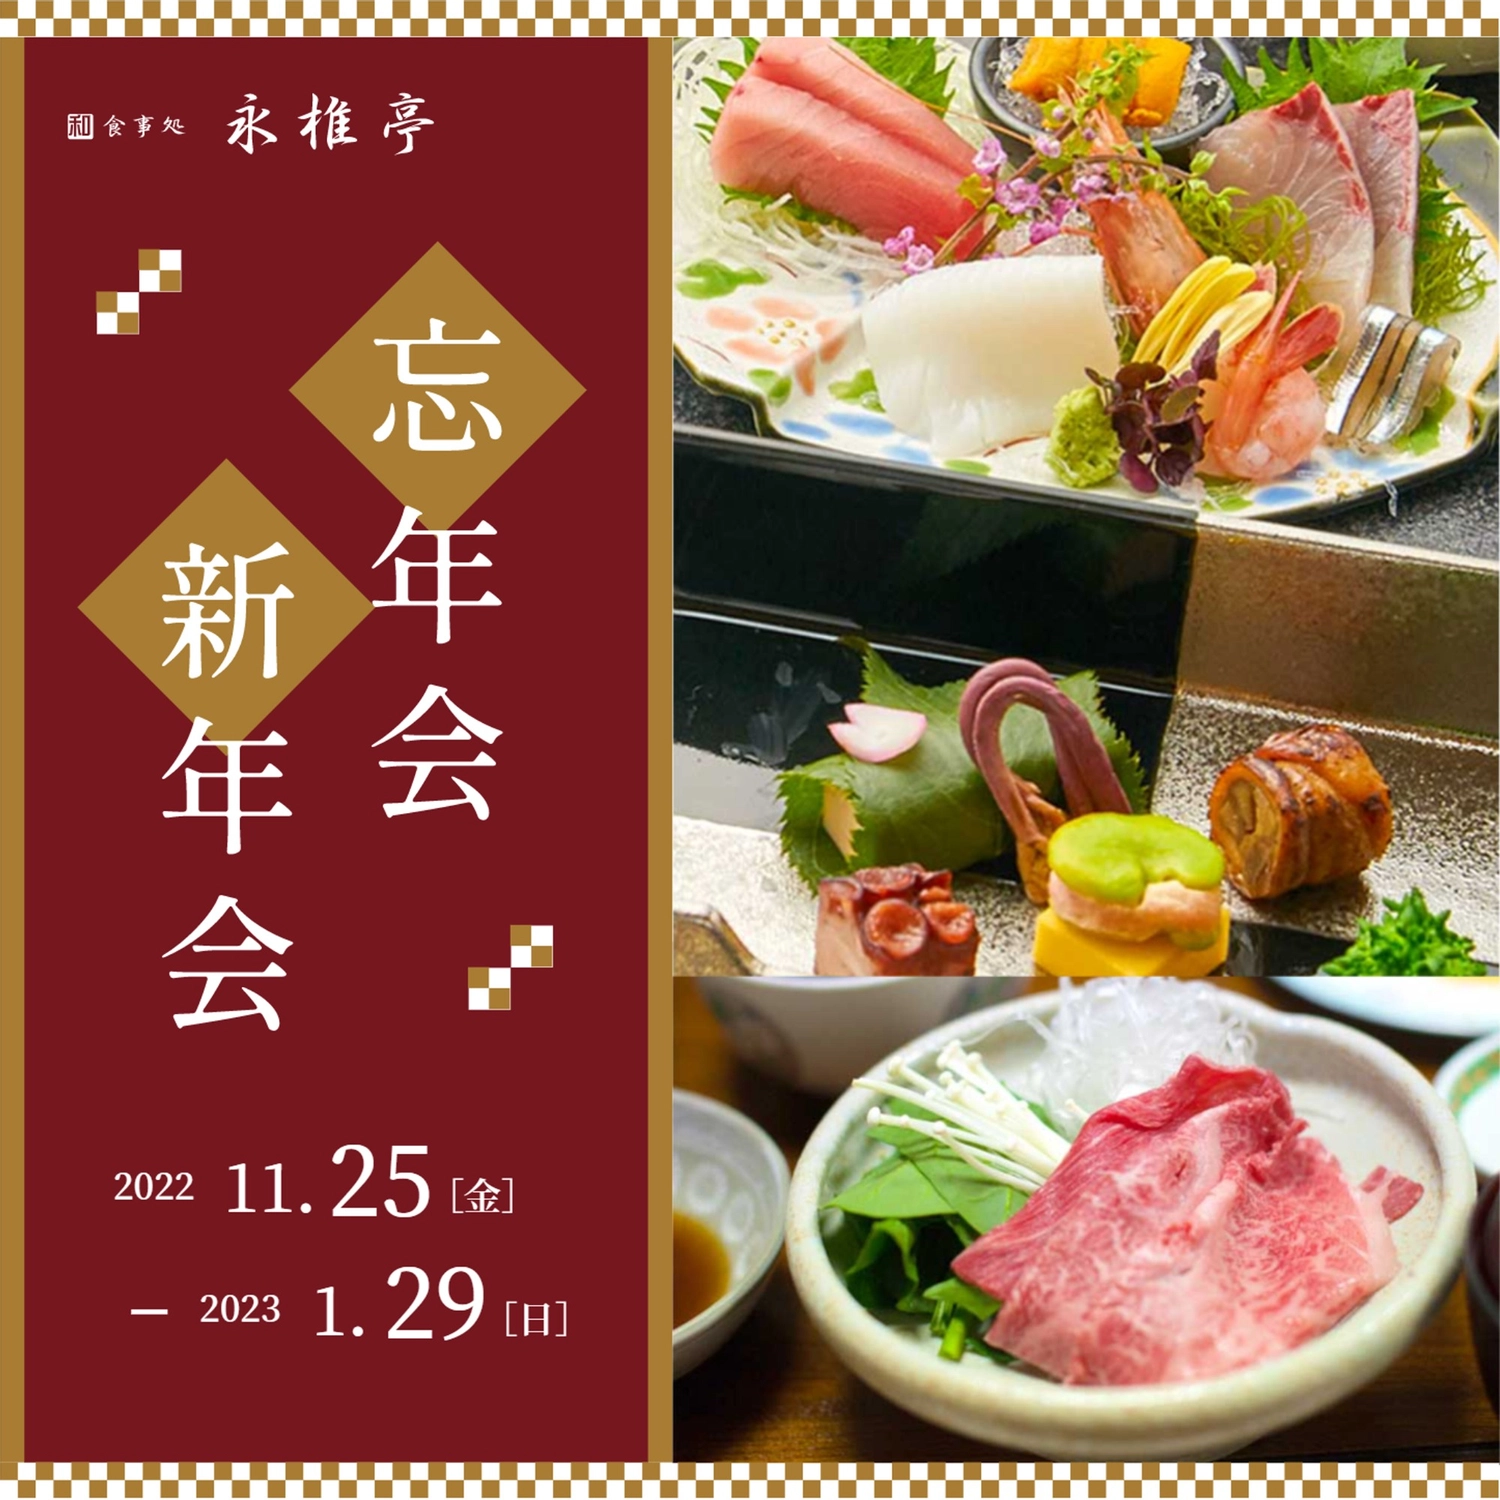 すき焼きやお造りの写真を使った忘年会新年会の広告
, sashimi, khởi đầu năm mới, cuối năm, Instagram Post mẫu